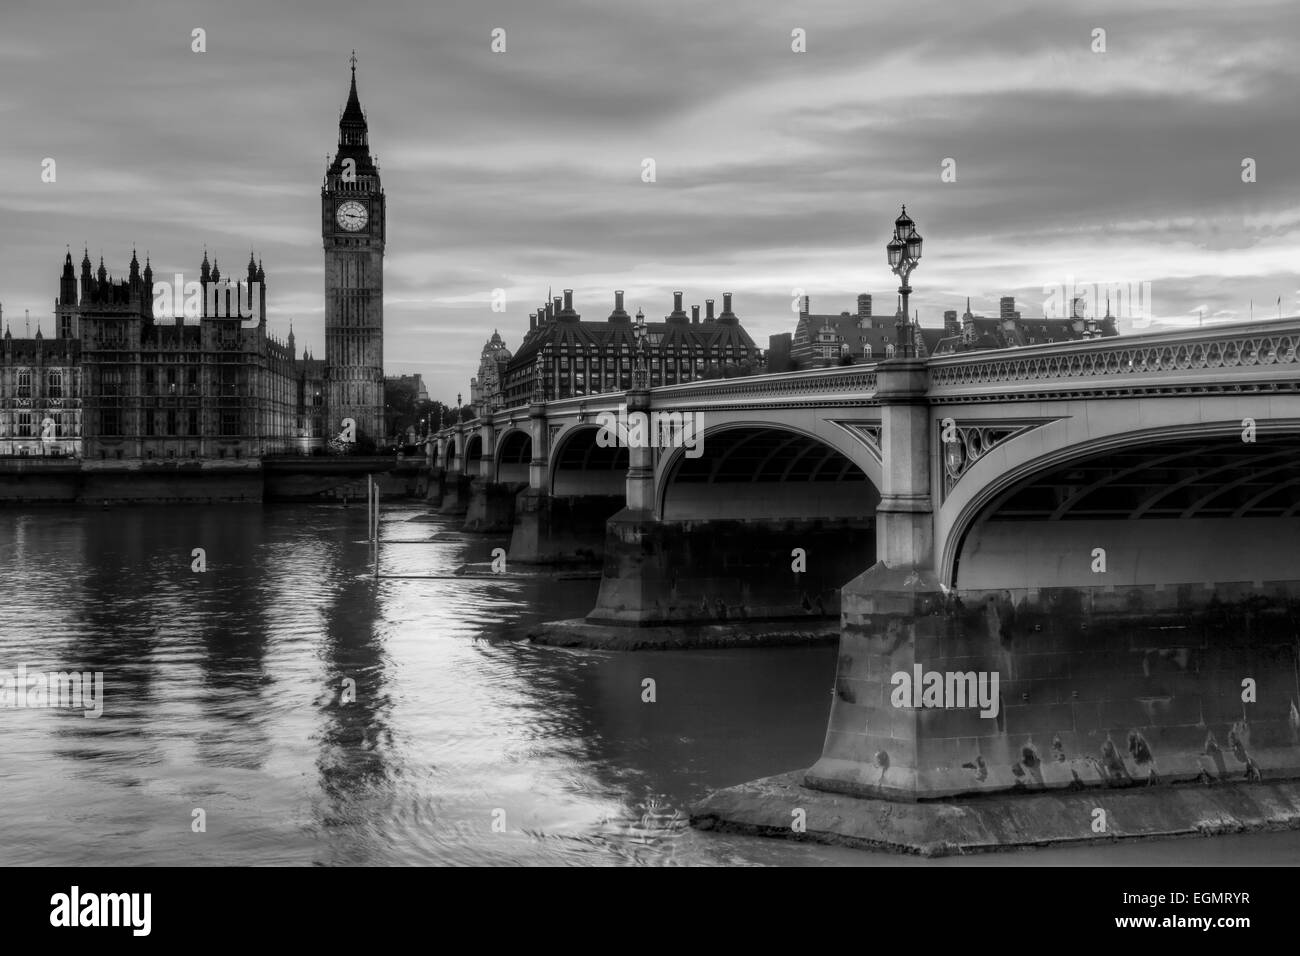 Les chambres du Parlement et le pont de Westminster, Londres, Angleterre Banque D'Images